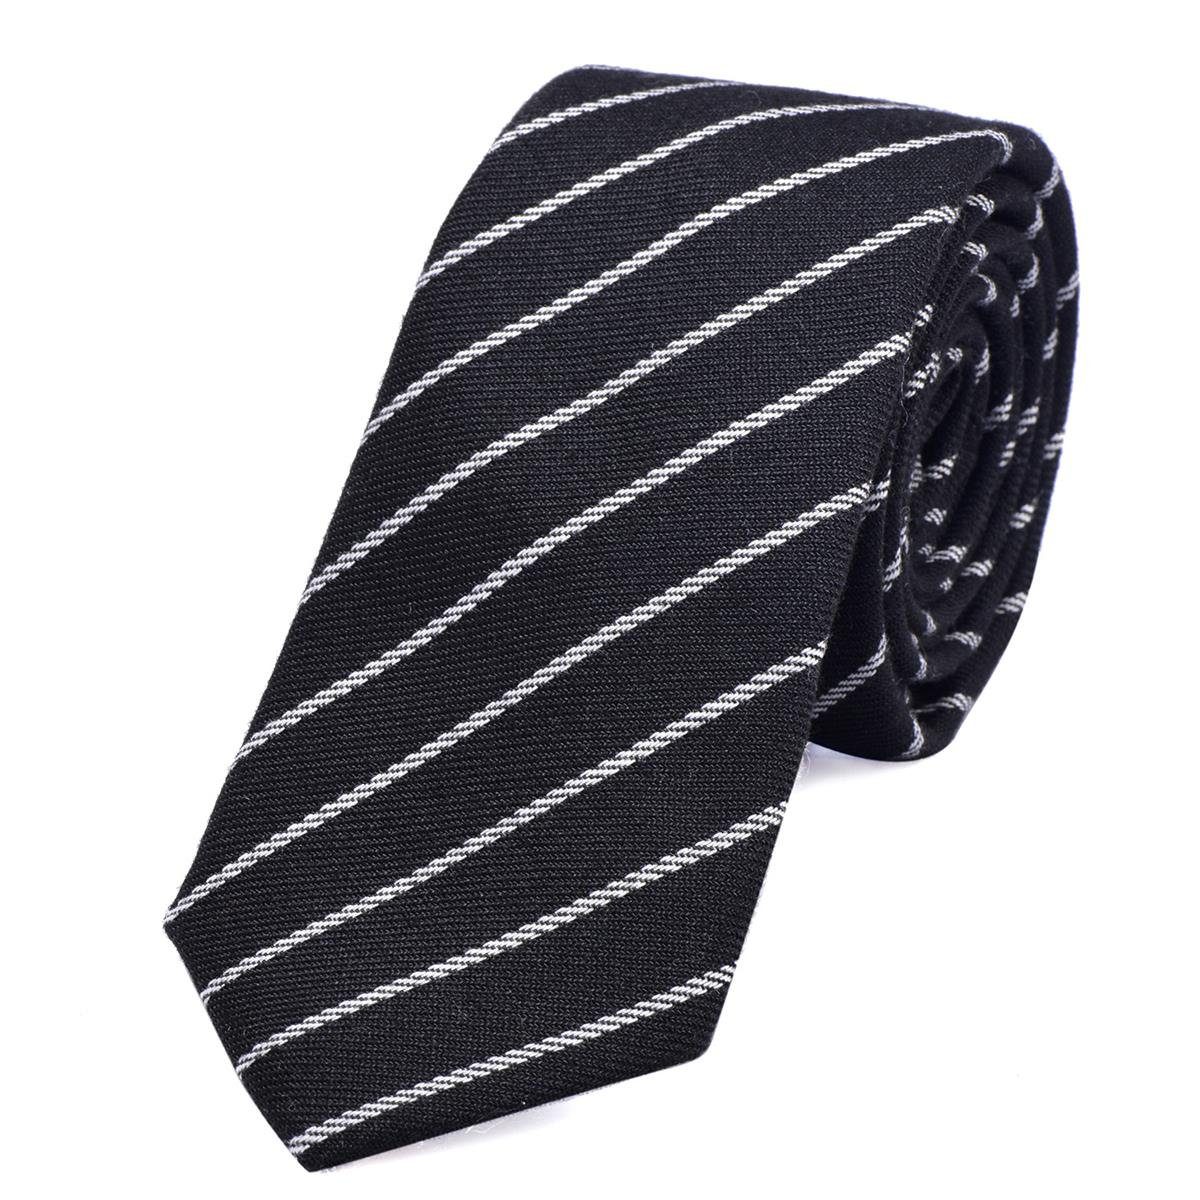 DonDon Krawatte Herren Krawatte 6 cm mit Karos oder Streifen (Packung, 1-St., 1x Krawatte) Baumwolle, kariert oder gestreift, für Büro oder festliche Veranstaltungen schwarz gestreift 3